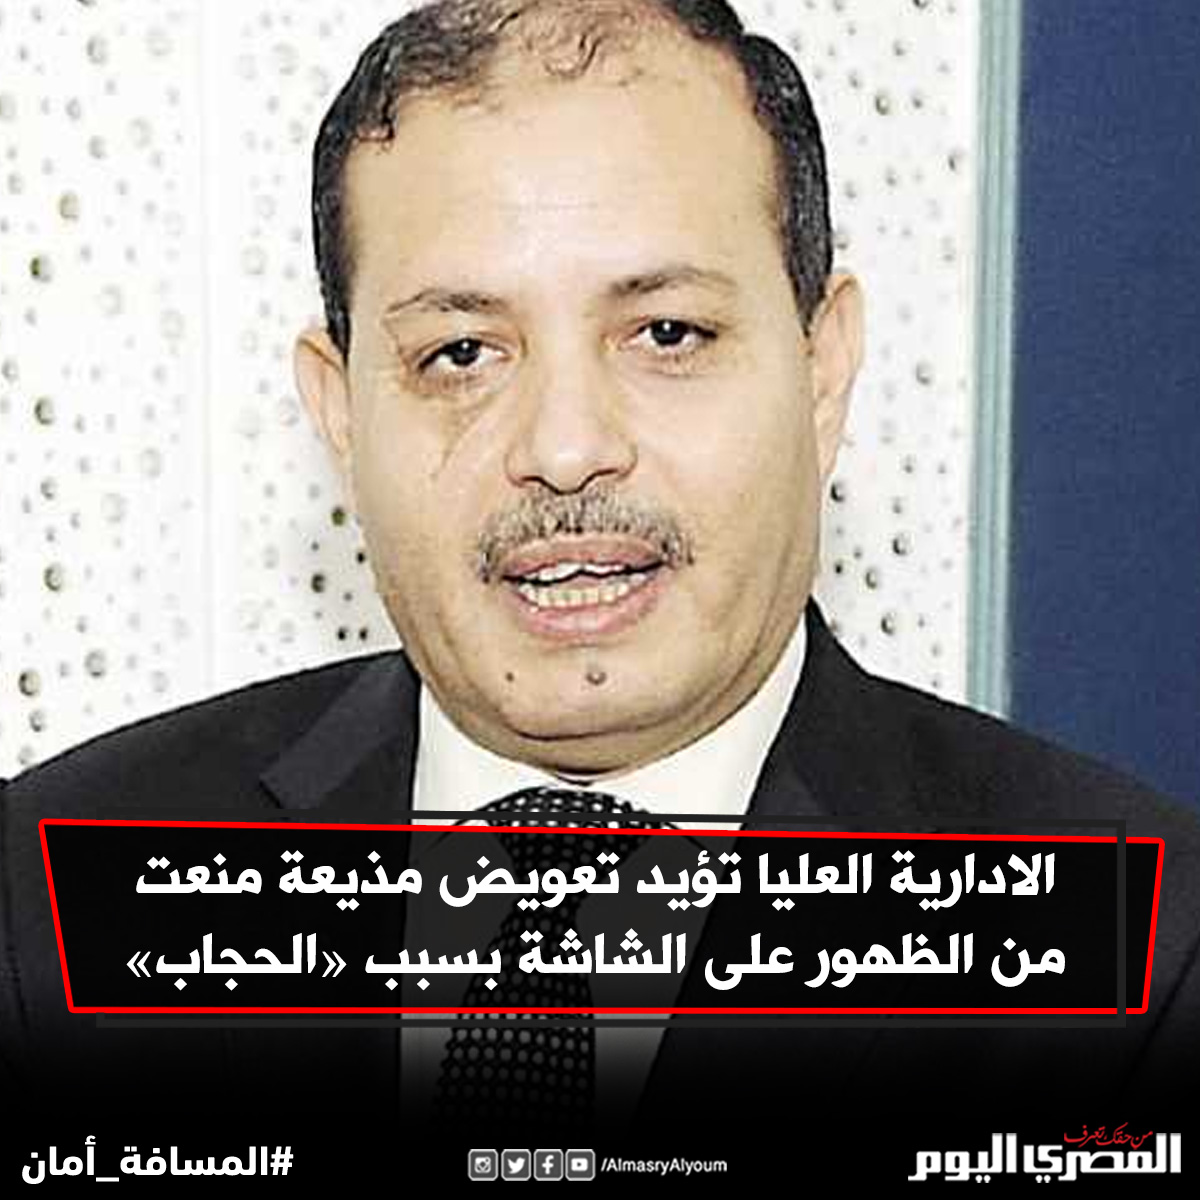 المحكمة تلزم «صلاح عبدالمقصود» برد ٢٧٠ الف جنيه تقاضاهابدون وجه حق